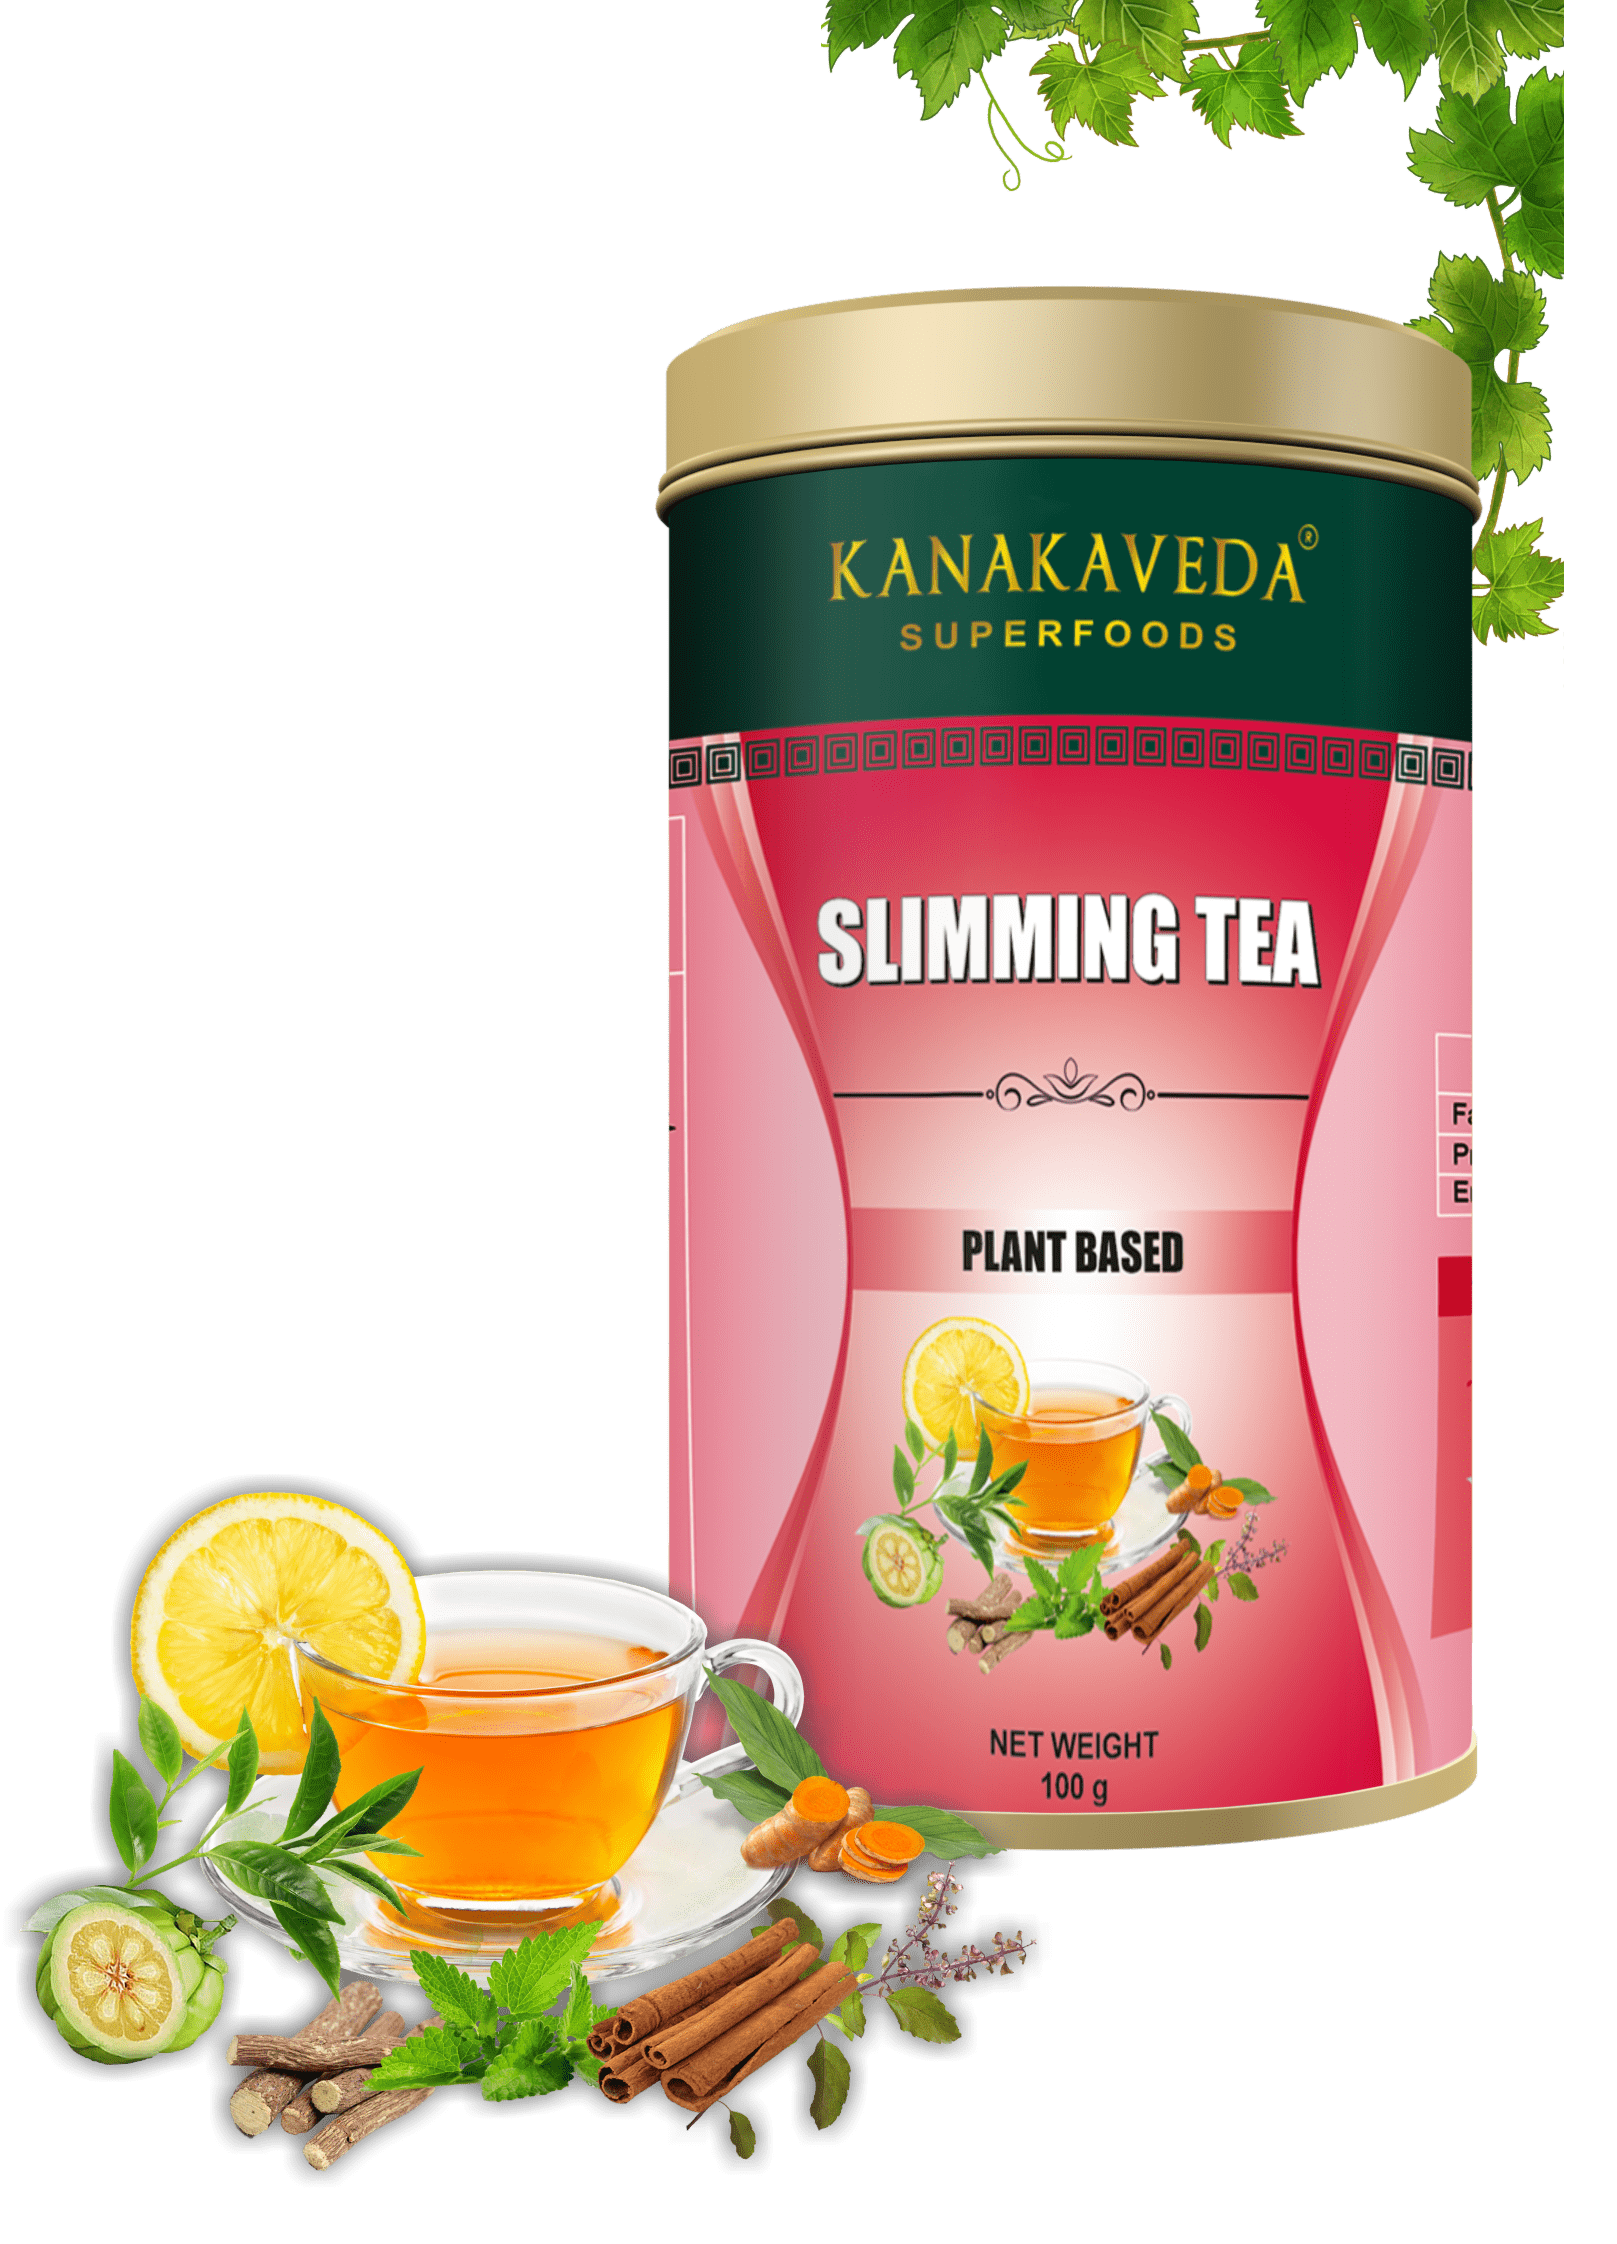 SLIMMING TEA - KANAKAVEDA